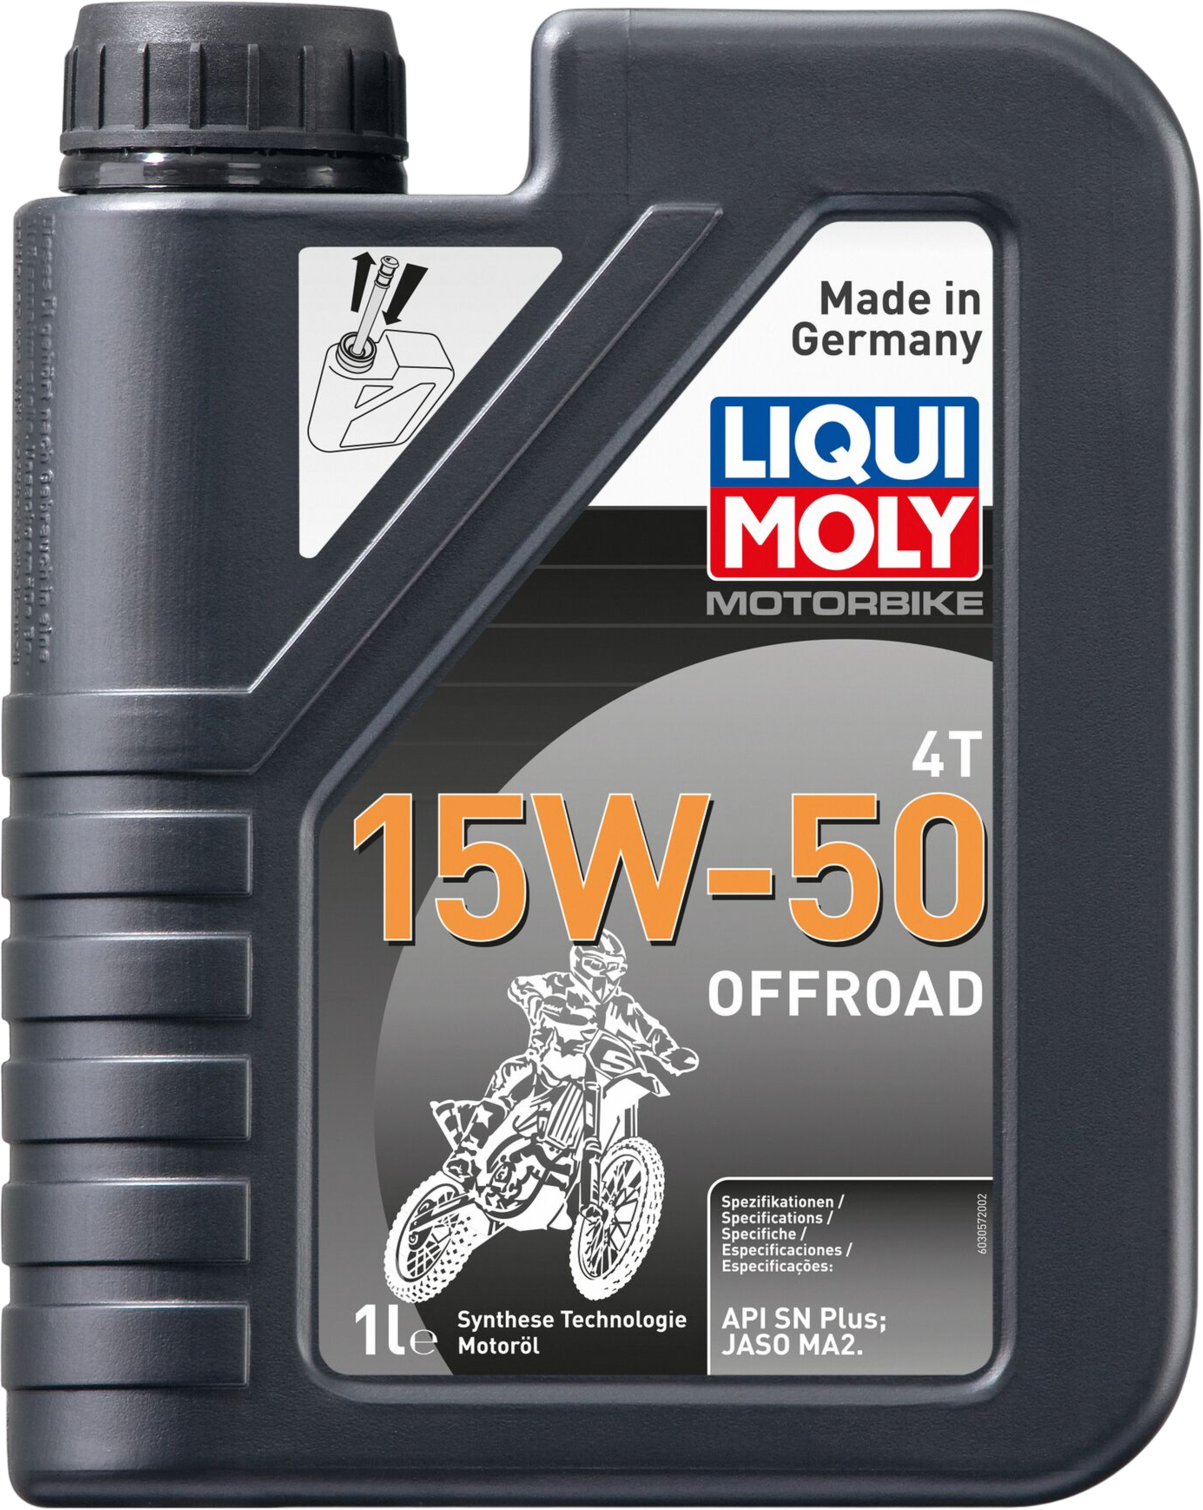 Liqui Moly Motorbike 4T 15W-50 Offroad, 1 lt